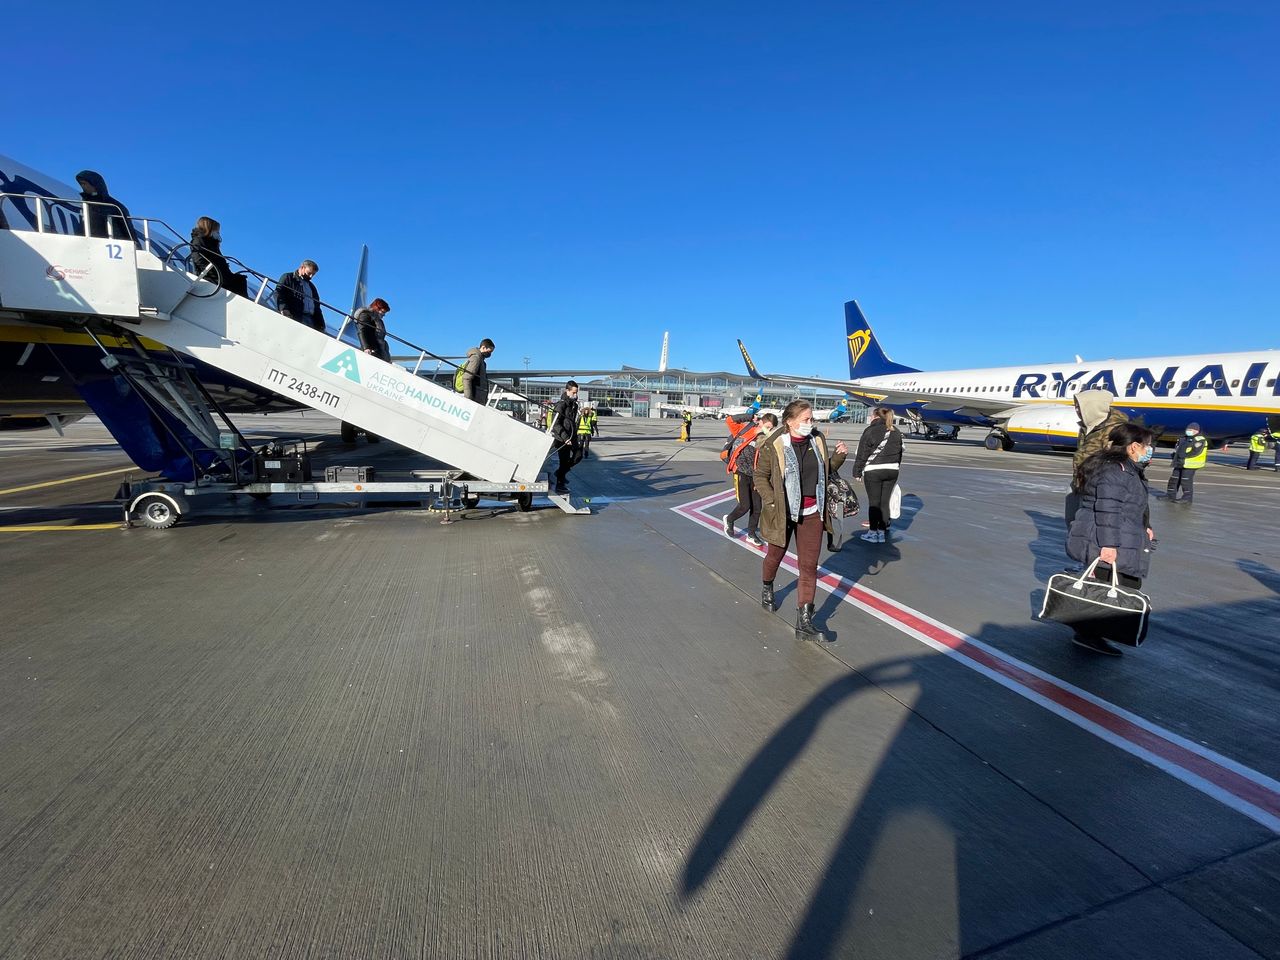 Στα αεροδρόμια του Κιέβου η κίνηση έχει περιοριστεί αλλά δεν έχει διακοπεί επί του παρόντος. Πρωί της Κυριακής 13 Φεβρουαρίου επιβάτες αποβιβάζονται από αεροσκάφος που μόλις έφτασε από την Αθήνα. Ωστόσο, η KLM ανακοίνωσε βράδη Σαββάτου στις 12 Φεβρουαρίου., ότι διακόπτει τις πτήσεις προς την Ουκρανία.